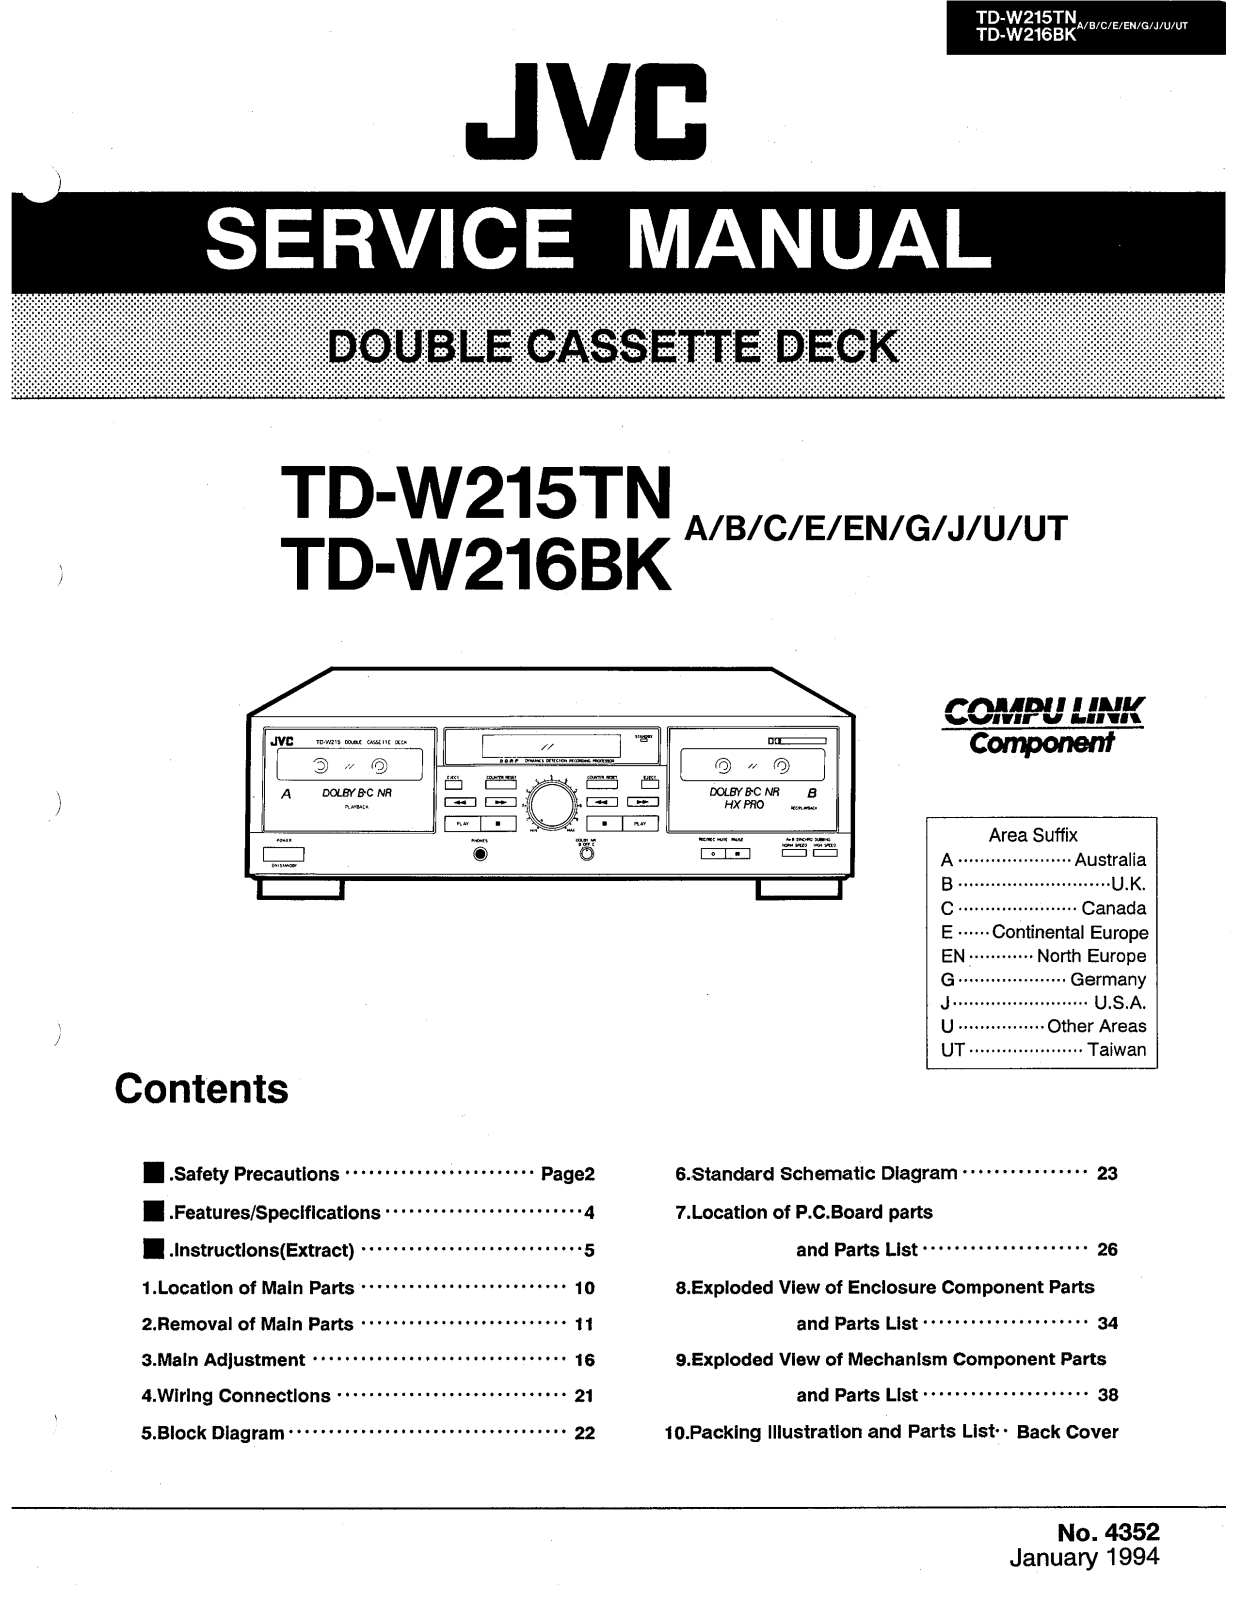 Jvc TD-W216-BK, TD-W215-TN Service Manual